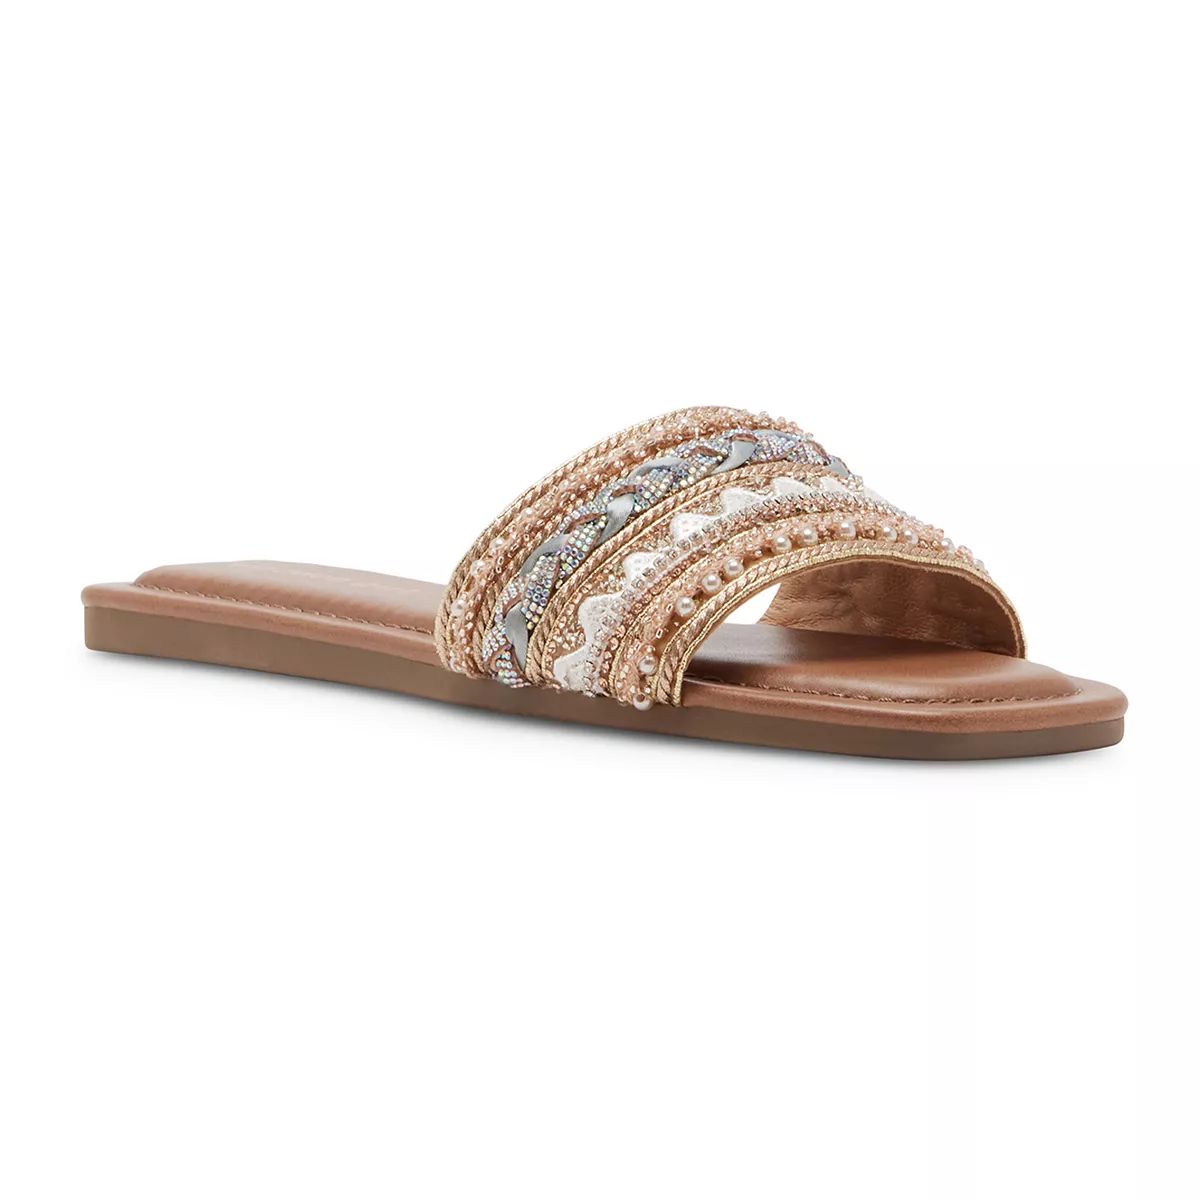 madden girl Thread Women's Slide Sandals | Kohl's